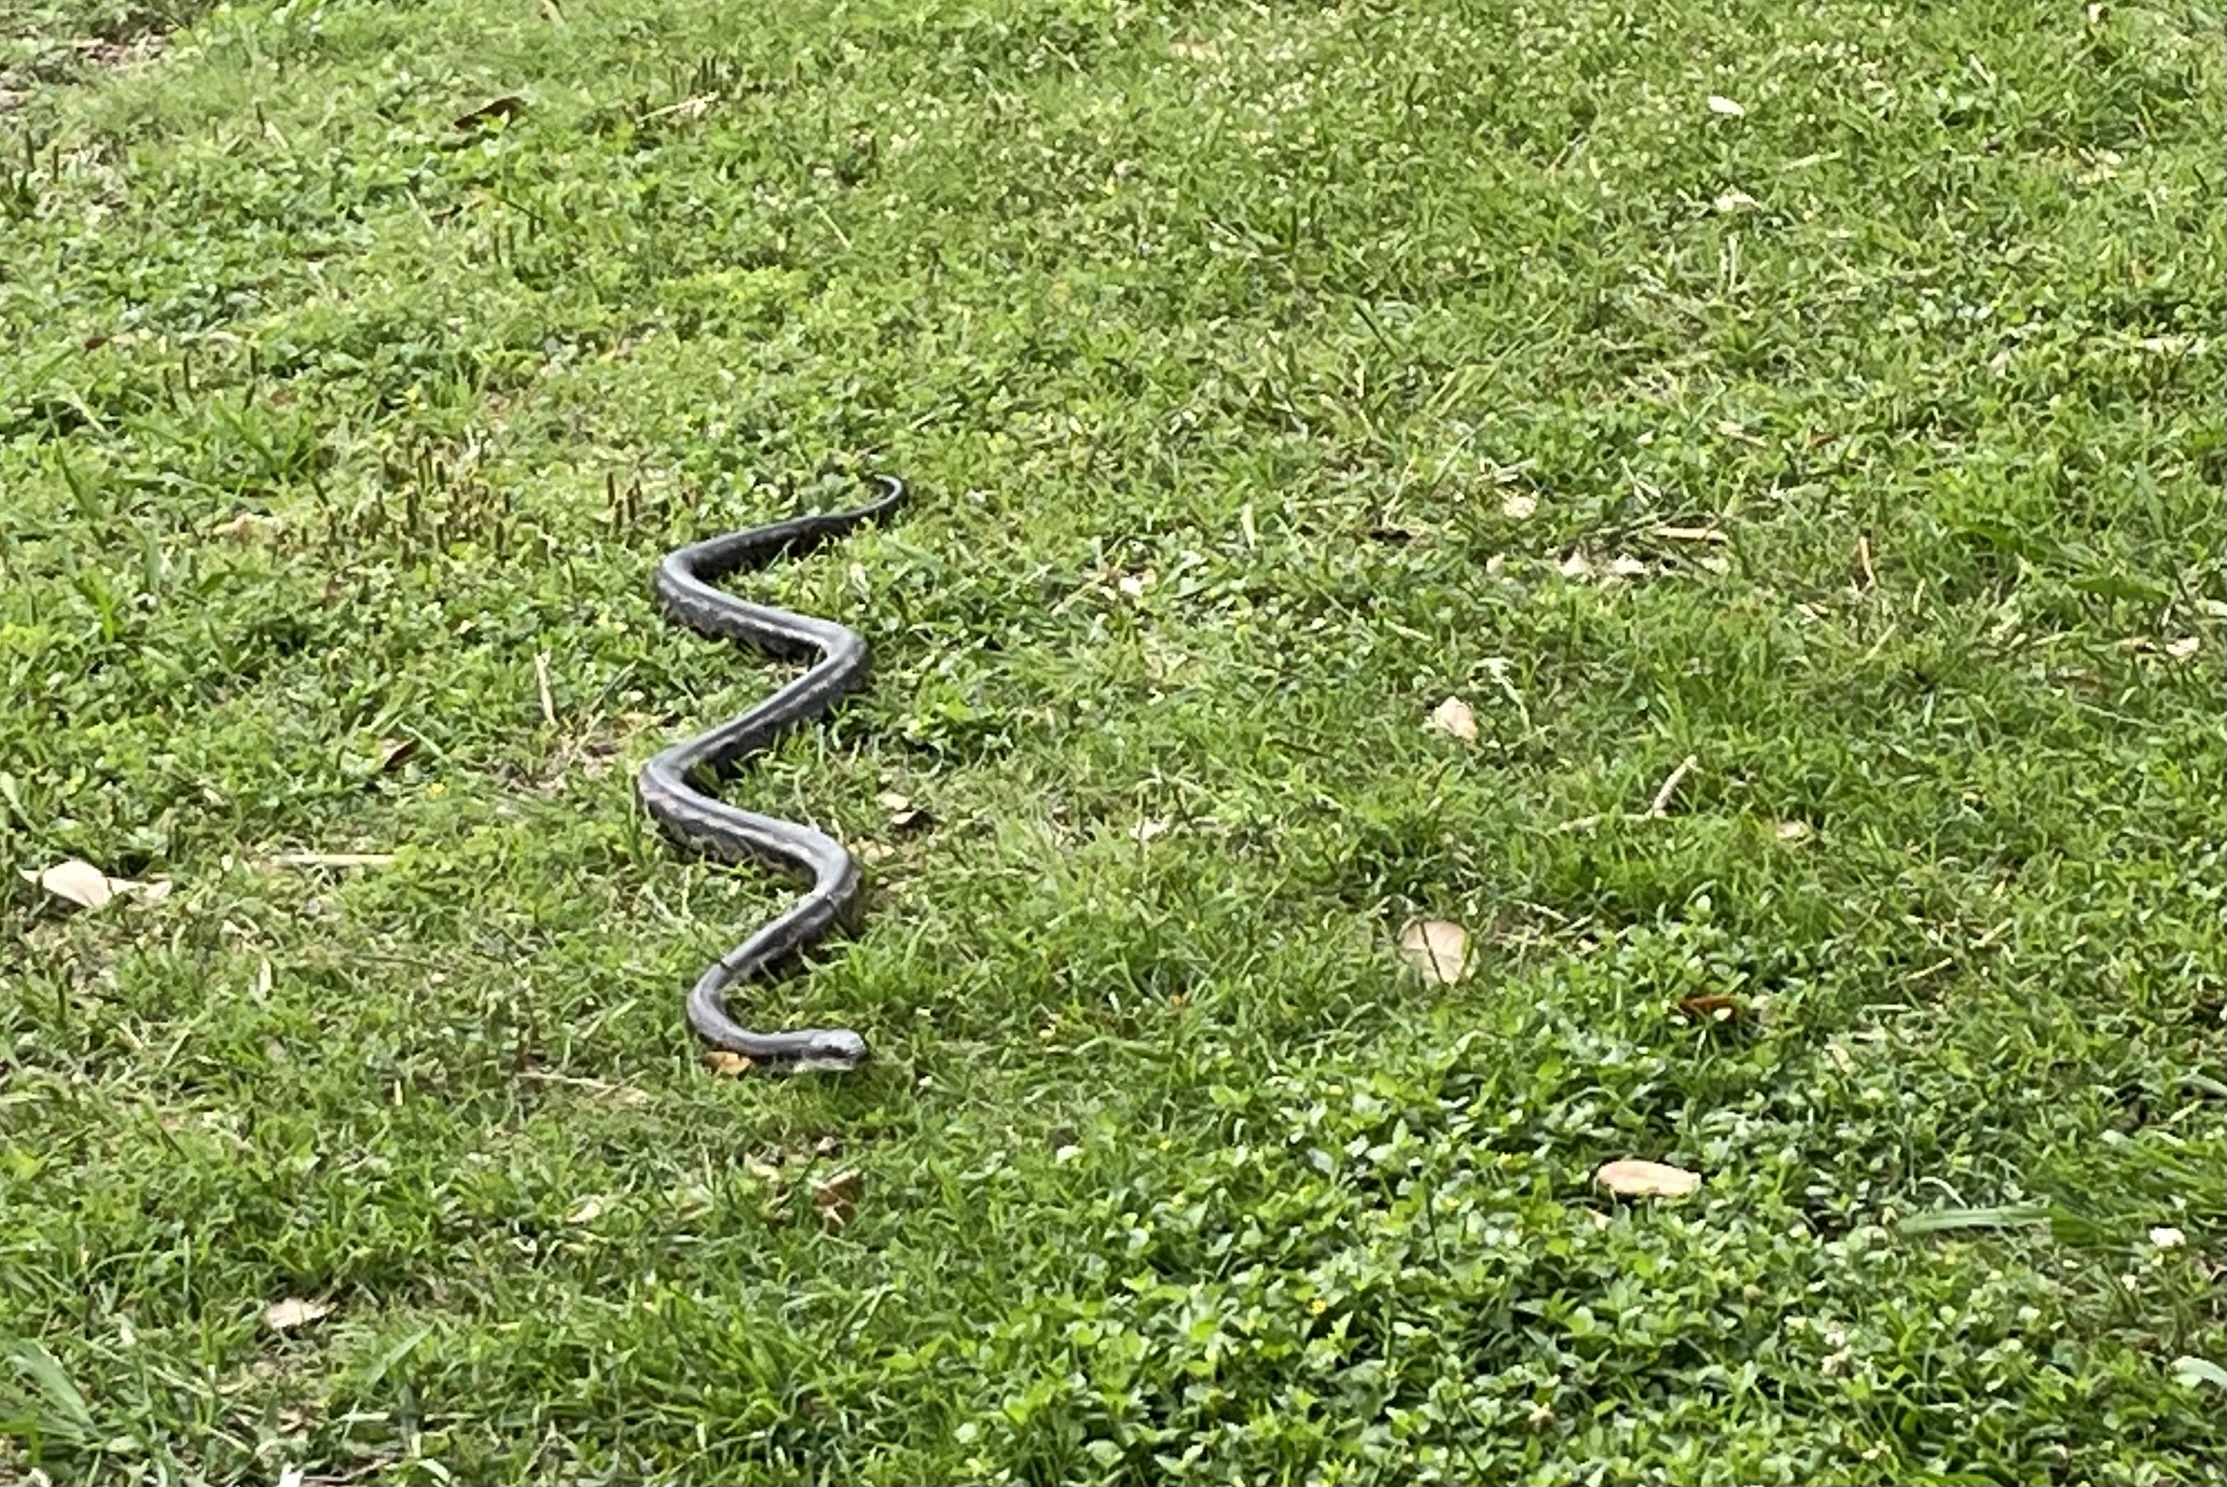 Snake slithering at White Rock Lake